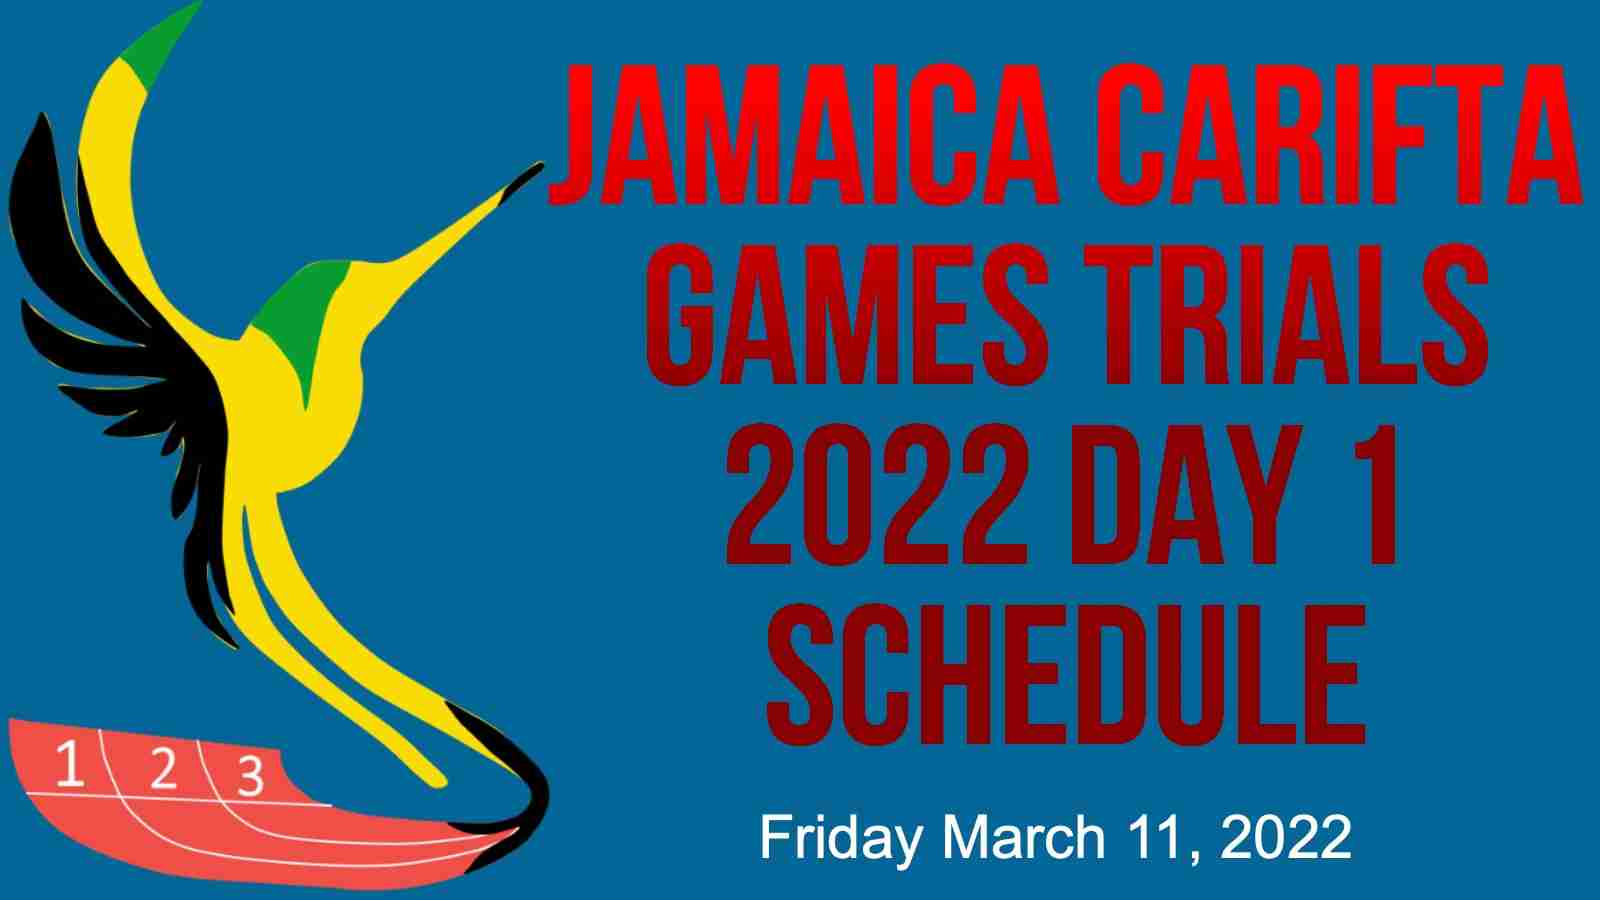 2022-Jamaica-Carifta-Games-Trials-Schedule